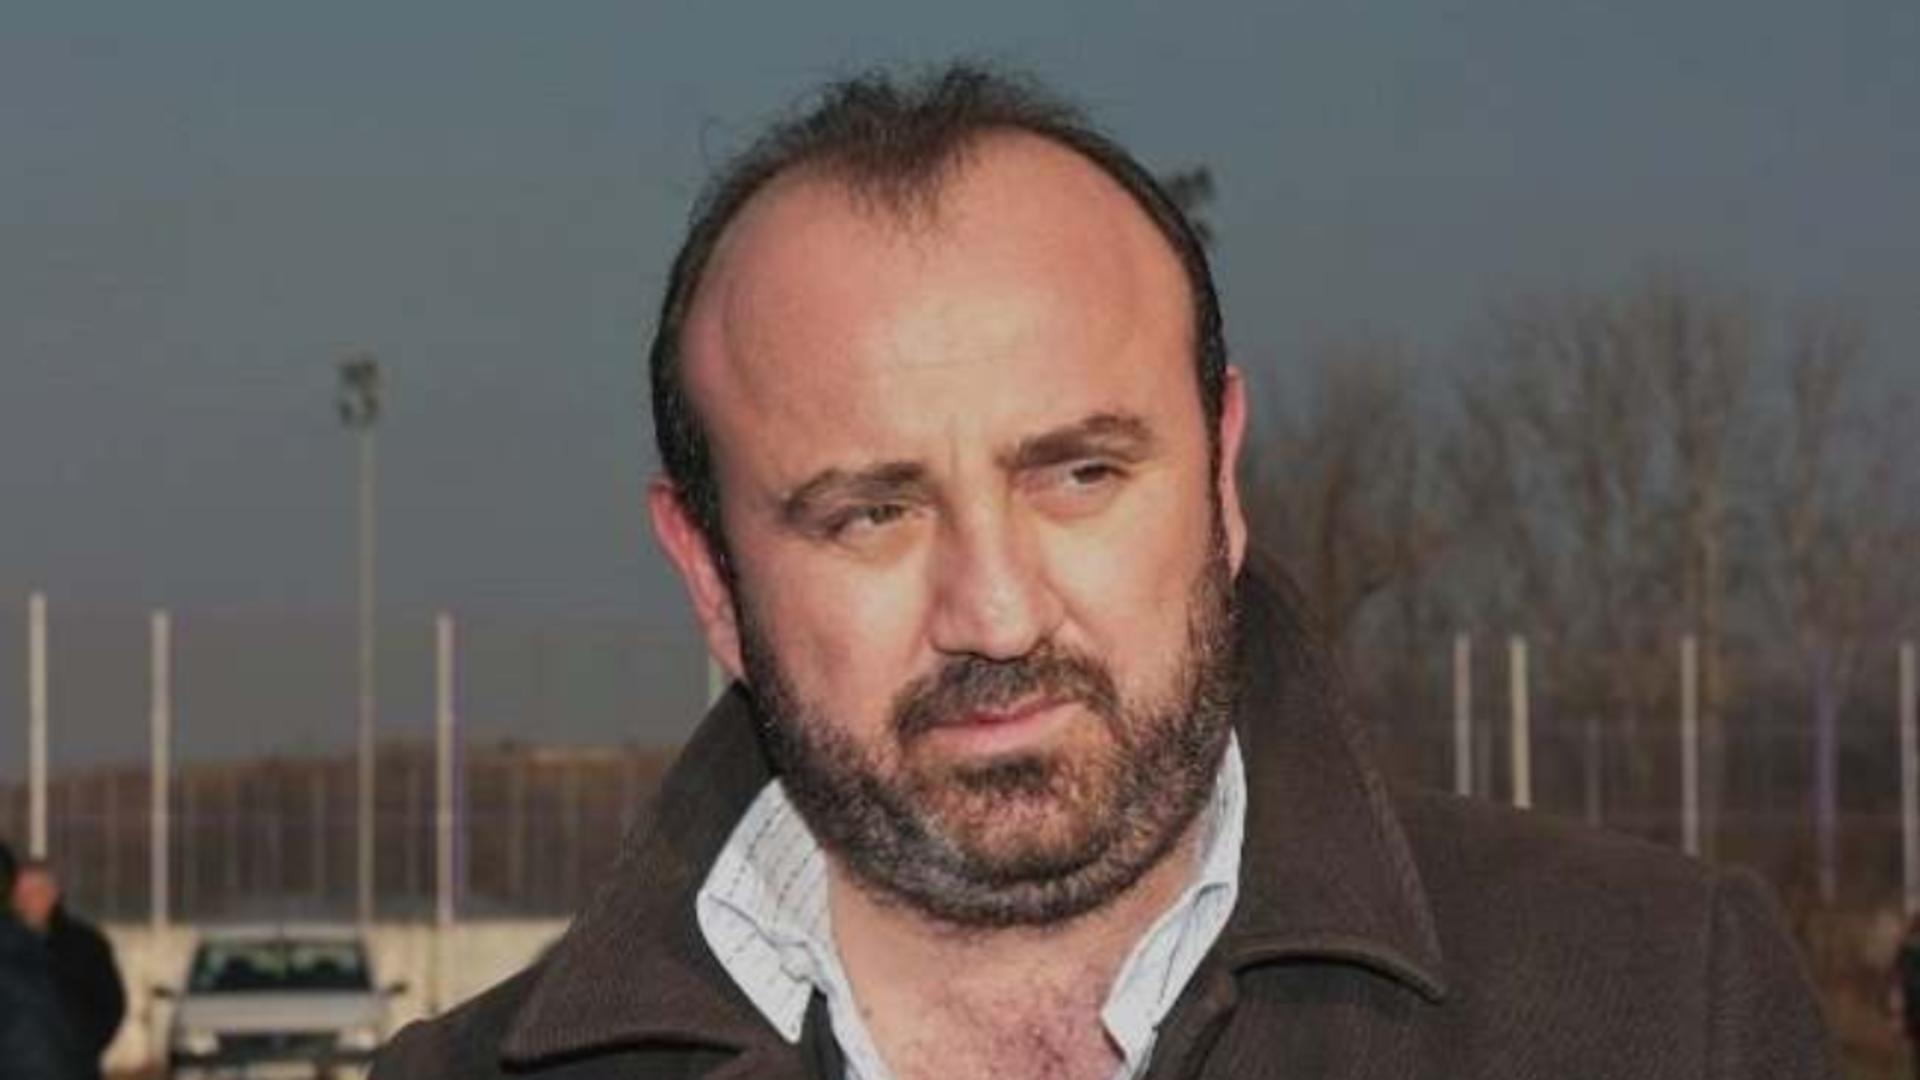 DOLIU imens în politică: A murit Adrian Orza, fostul viceprimar al Timișoarei - Avea 54 de ani